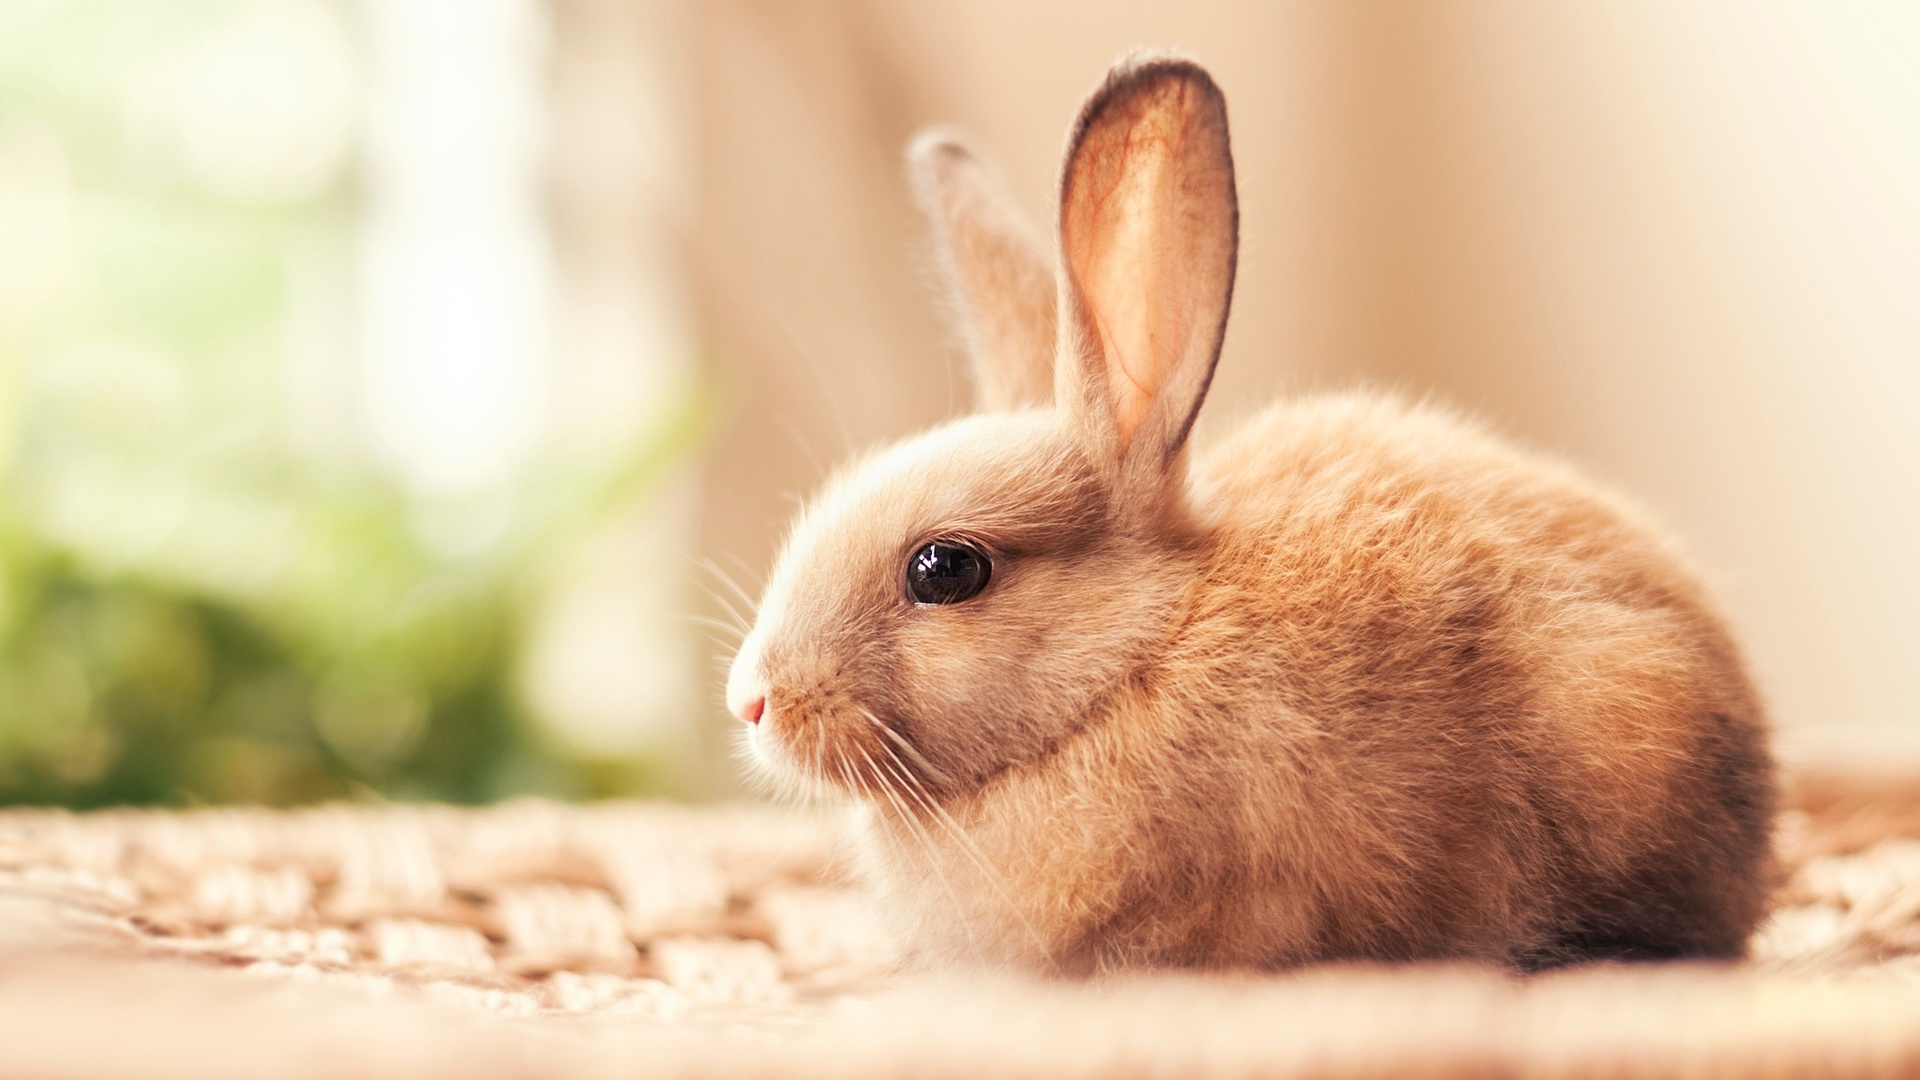 Tuyển chọn 50 hình nền những chú thỏ siêu cute dễ thương